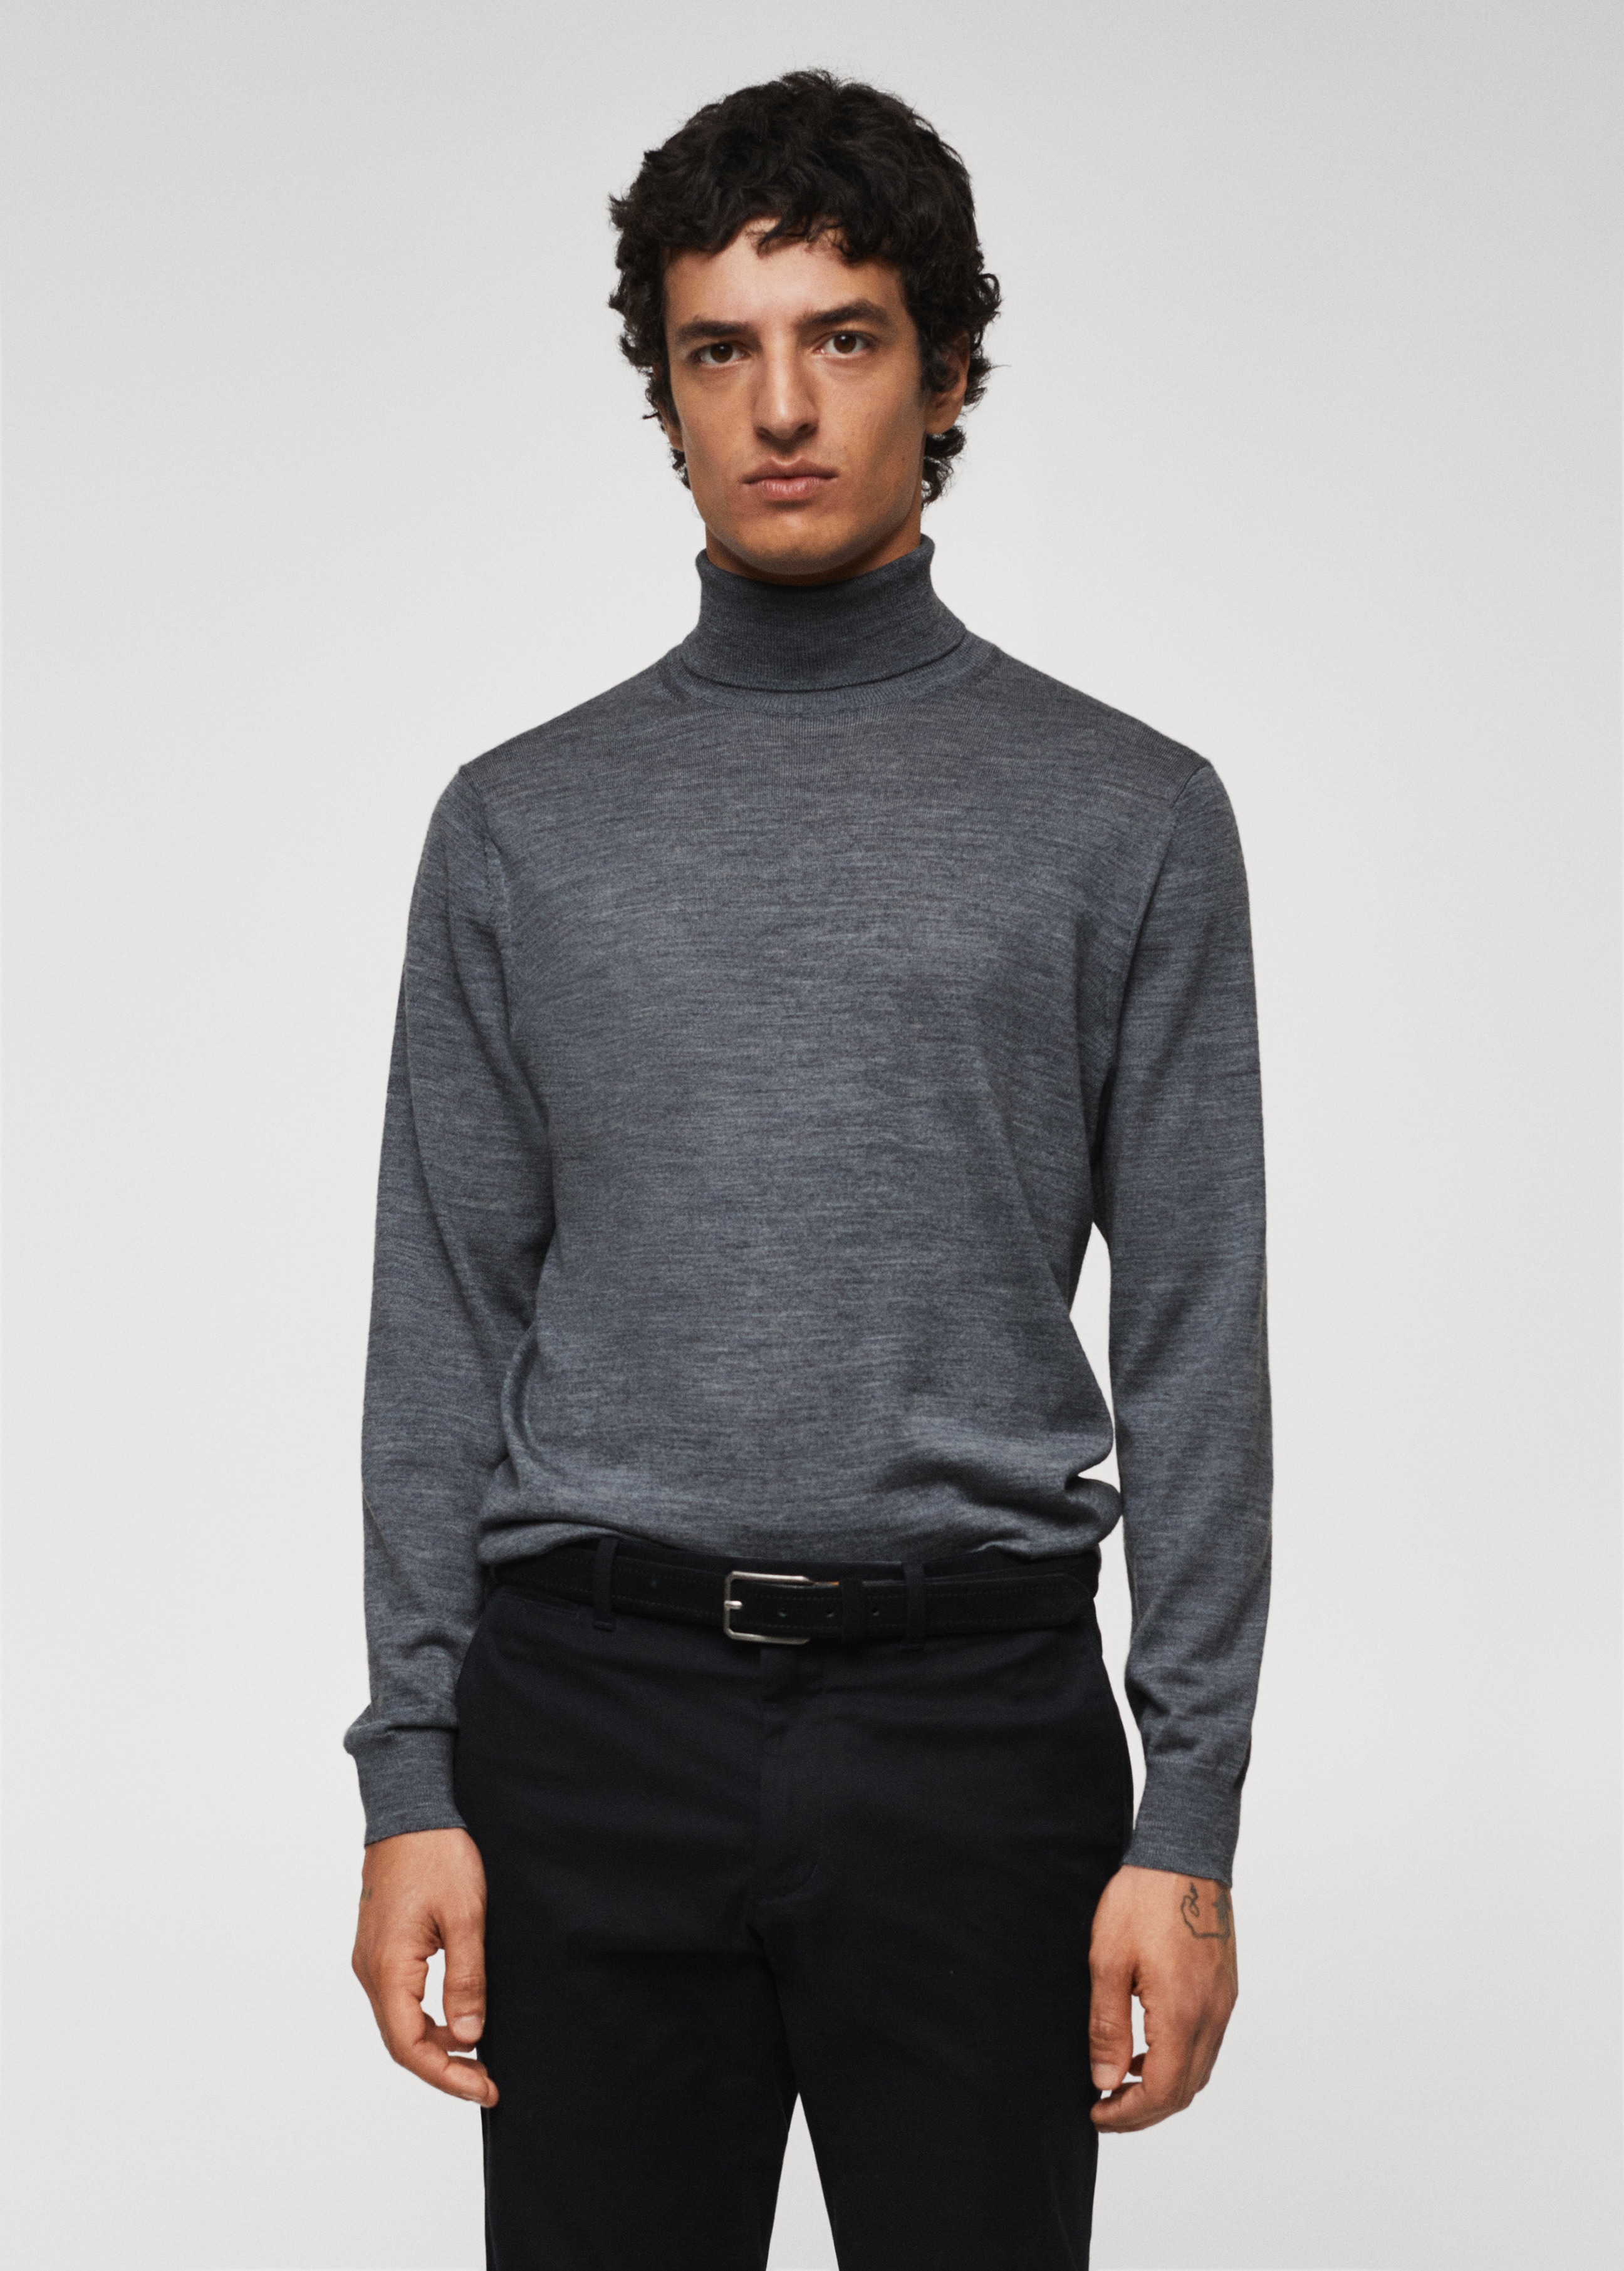 100% merino wool sweater - Medium plane